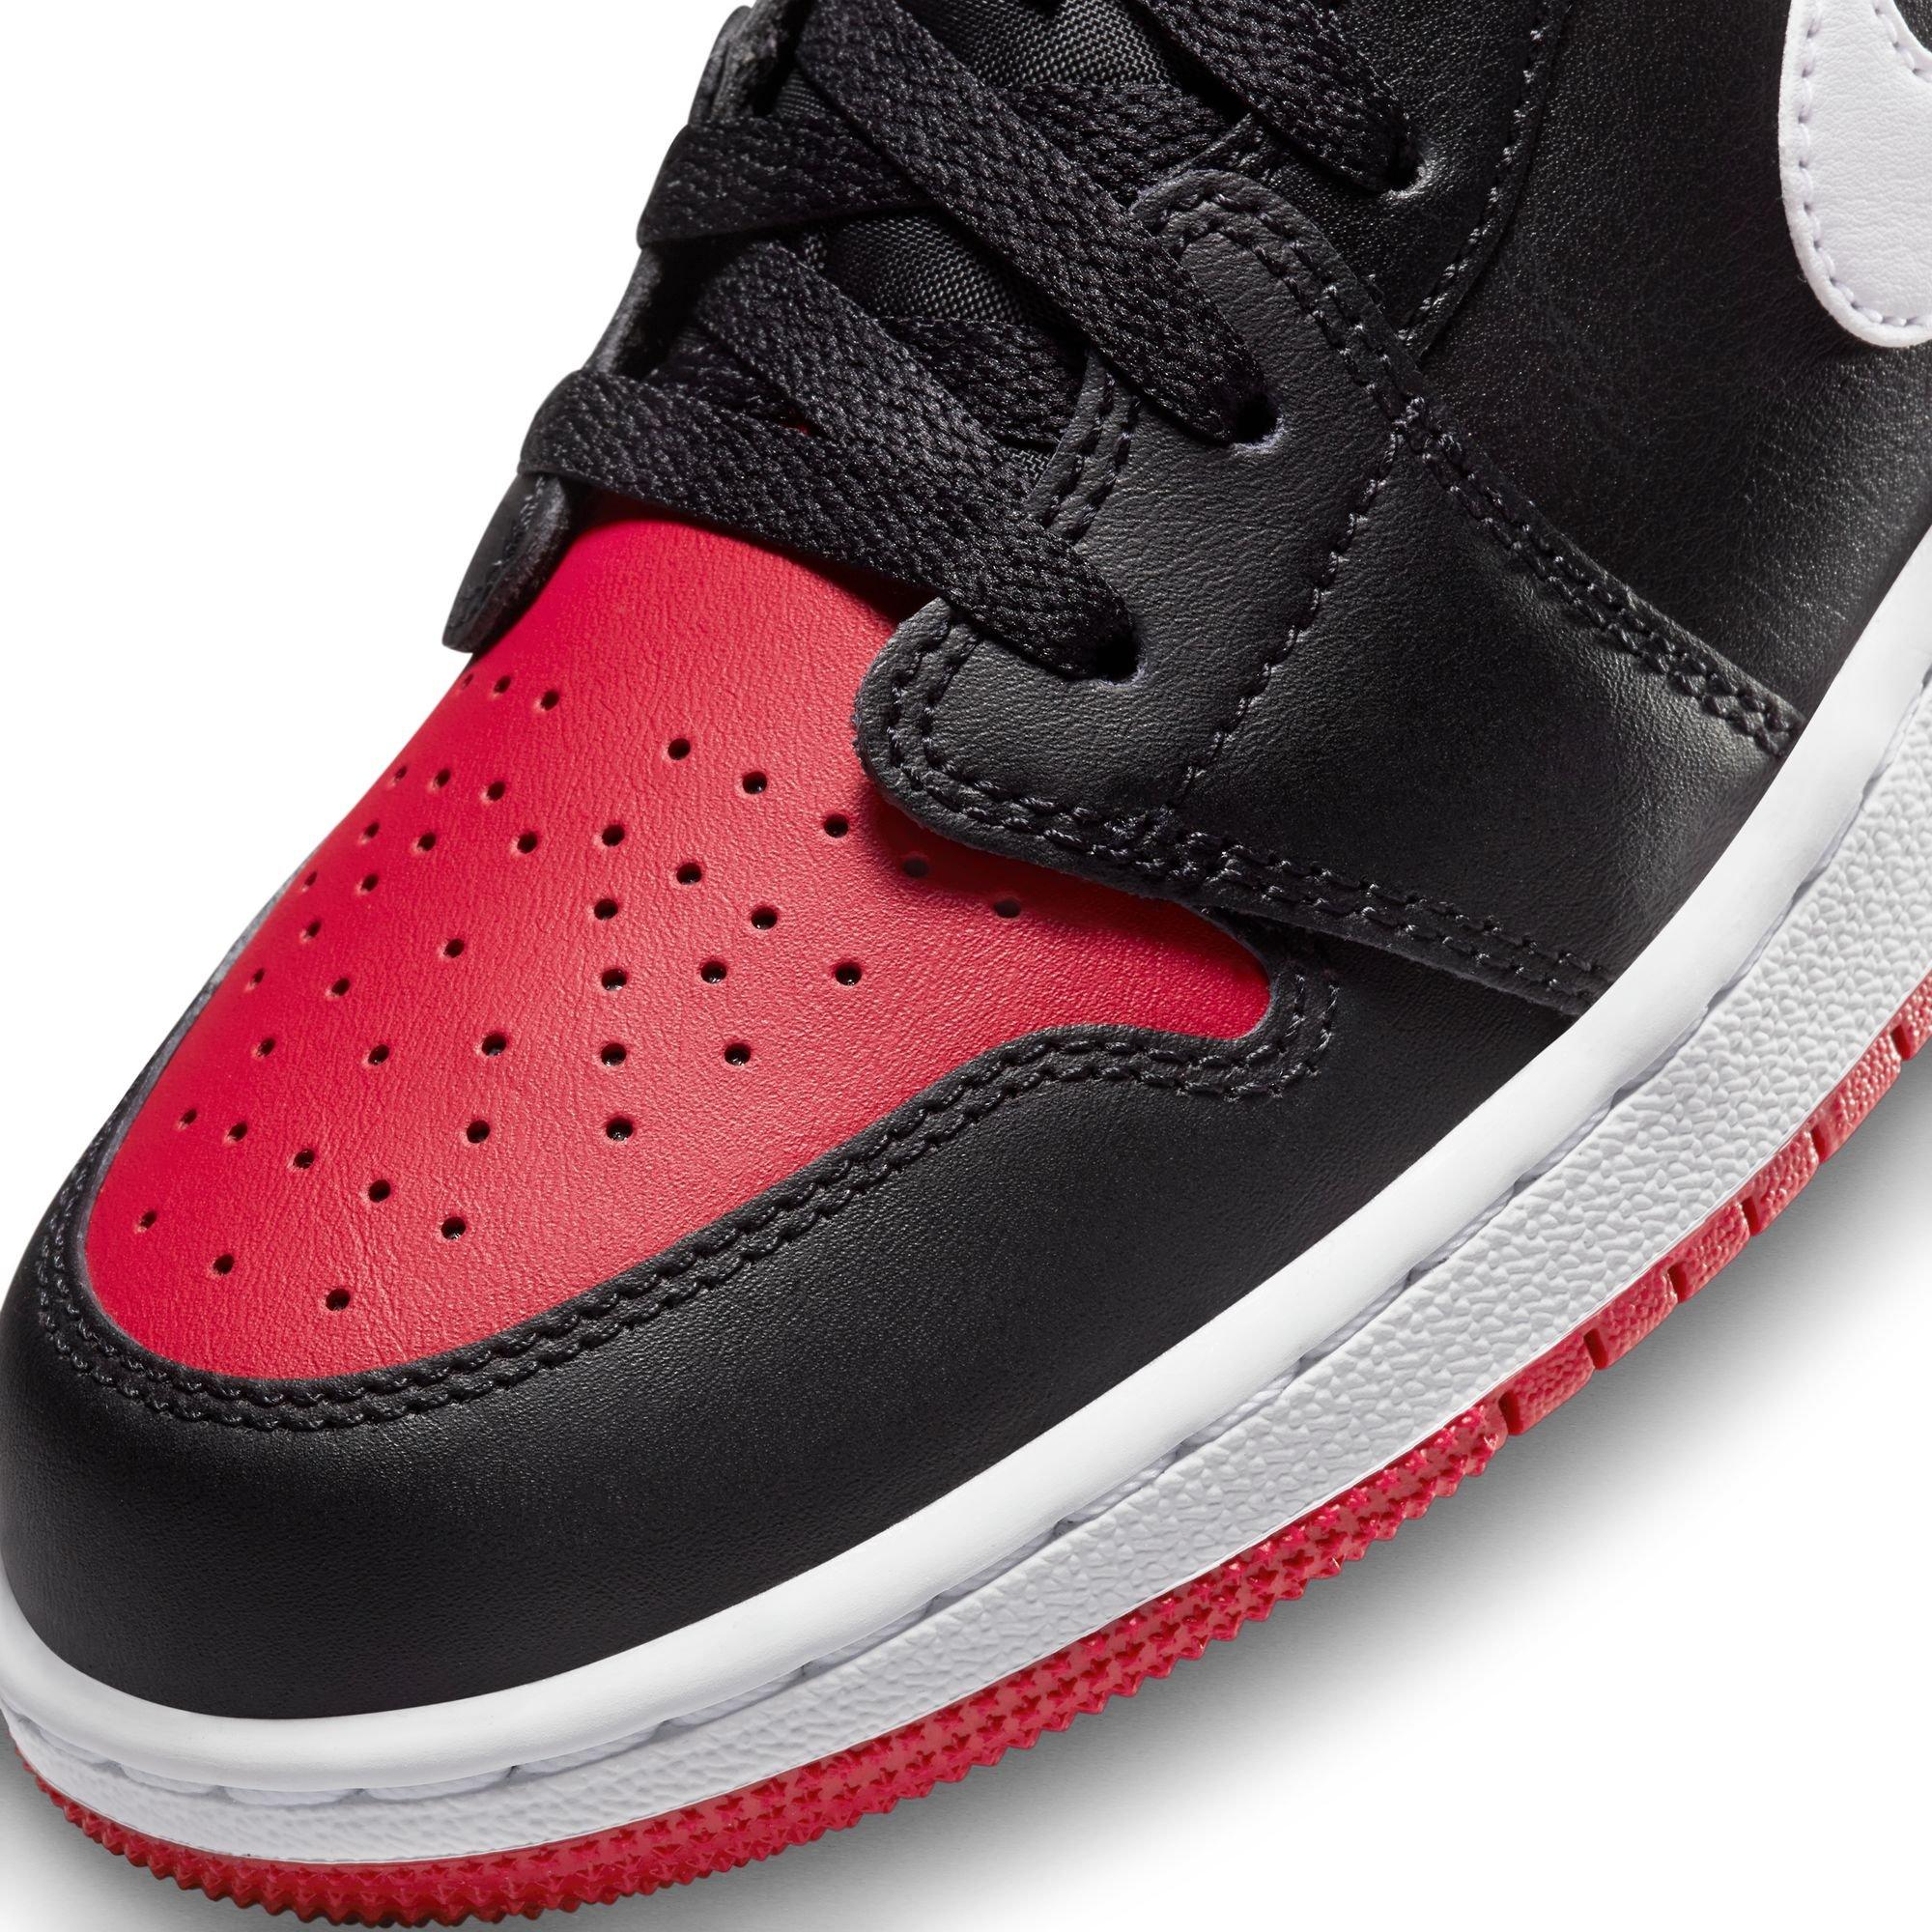 We're Getting Déjà Vu With The Air Jordan 1 Low Black Gym Red White -  Sneaker News